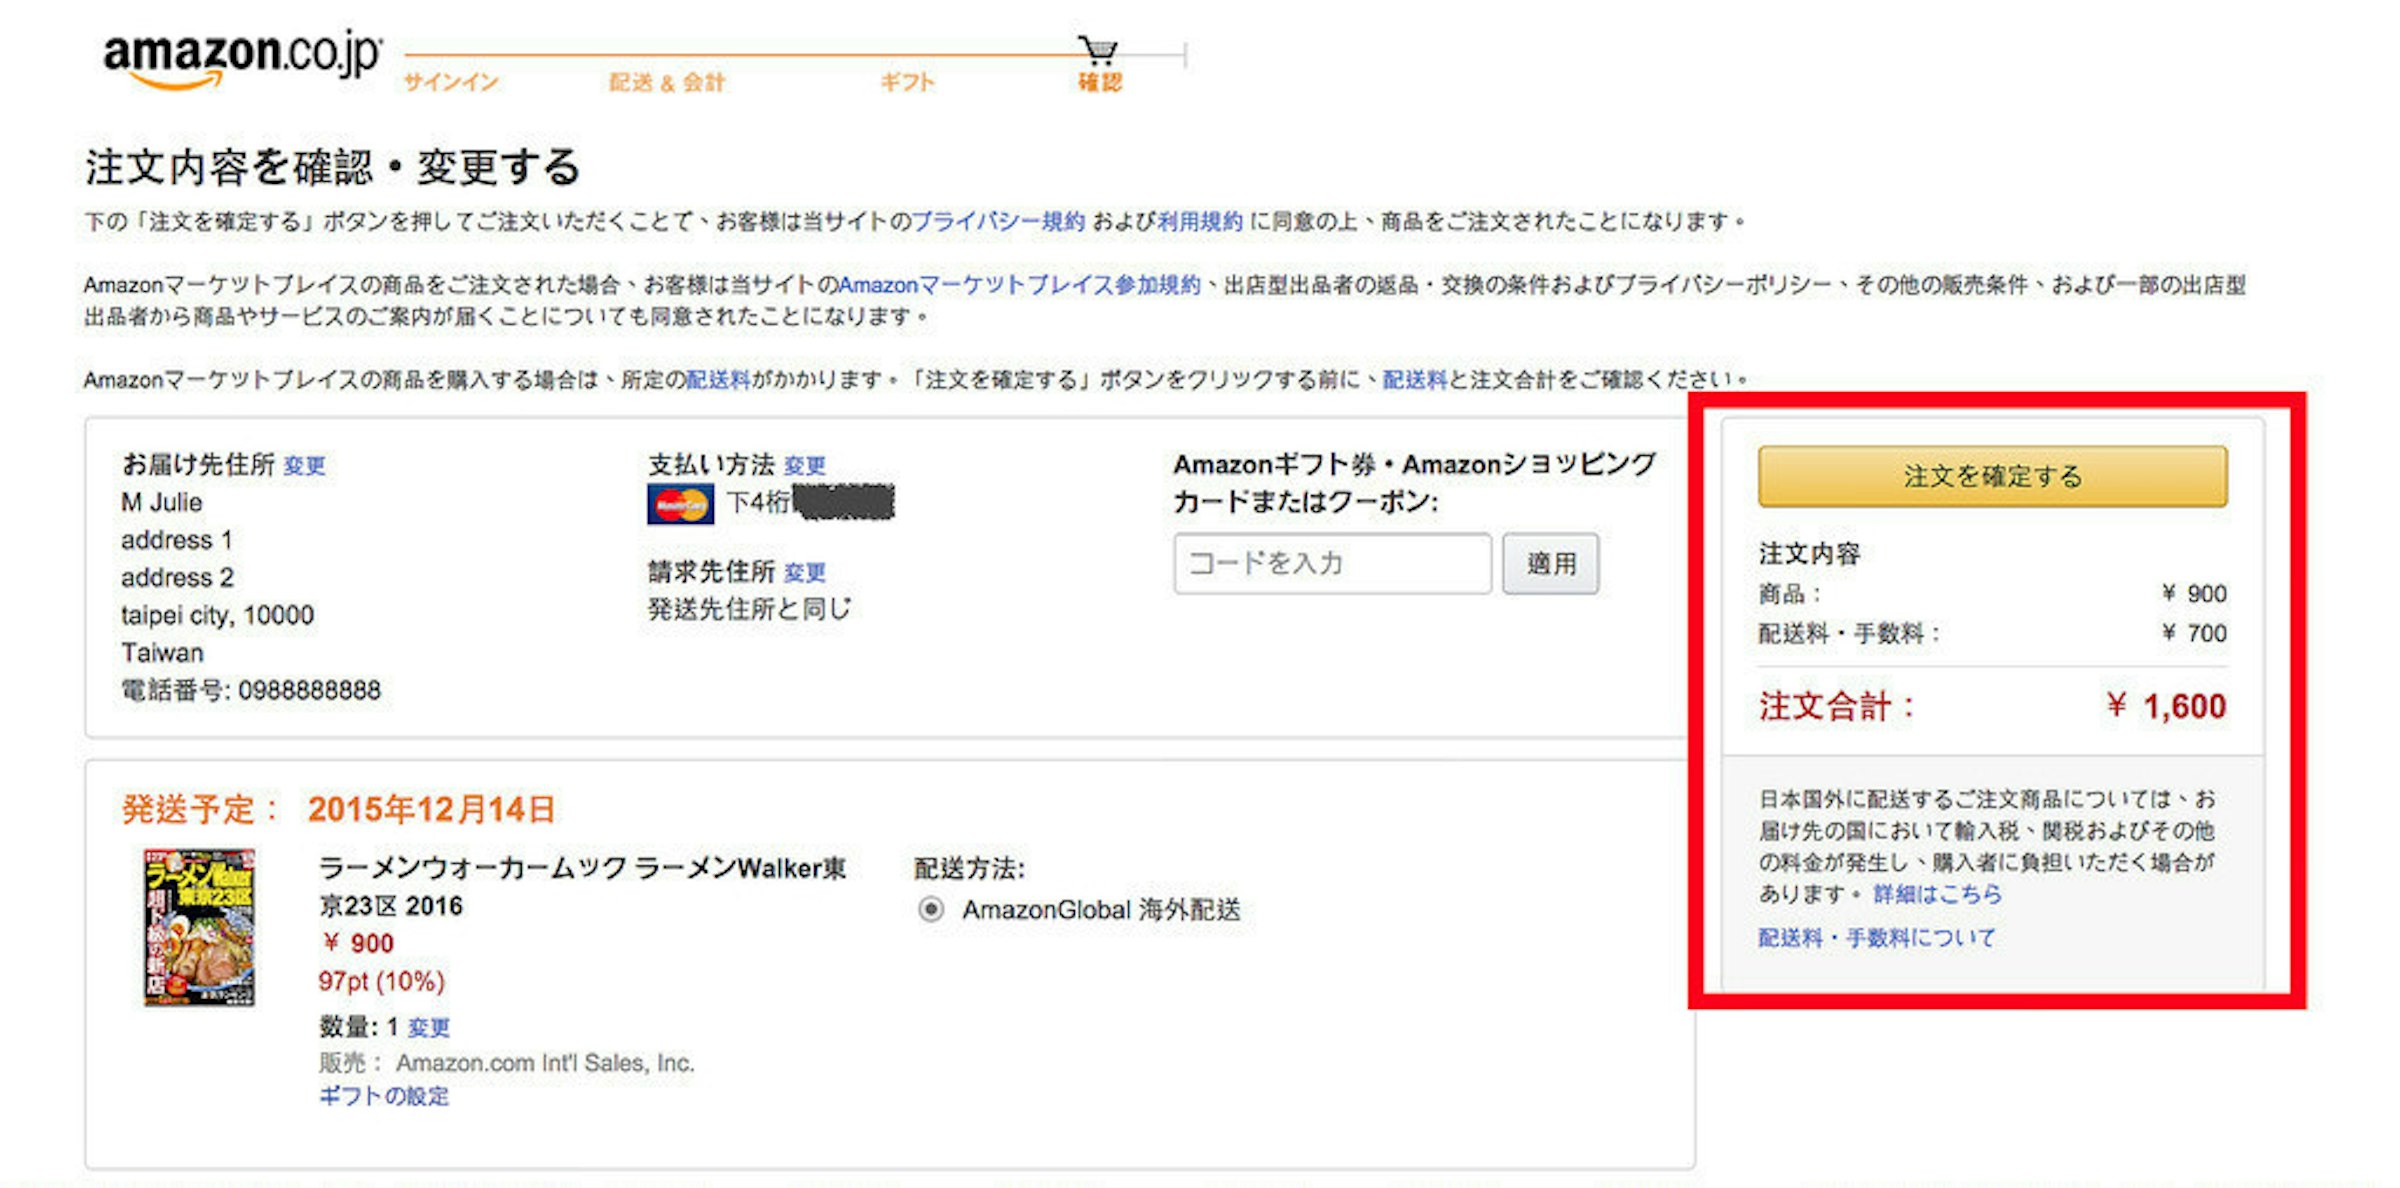 面白日本 Amazon Jp 註冊超簡易 看完本教學 買日本的書 Cd通通用亞馬遜寄台灣 超省錢 下 海外 996 Cool3c